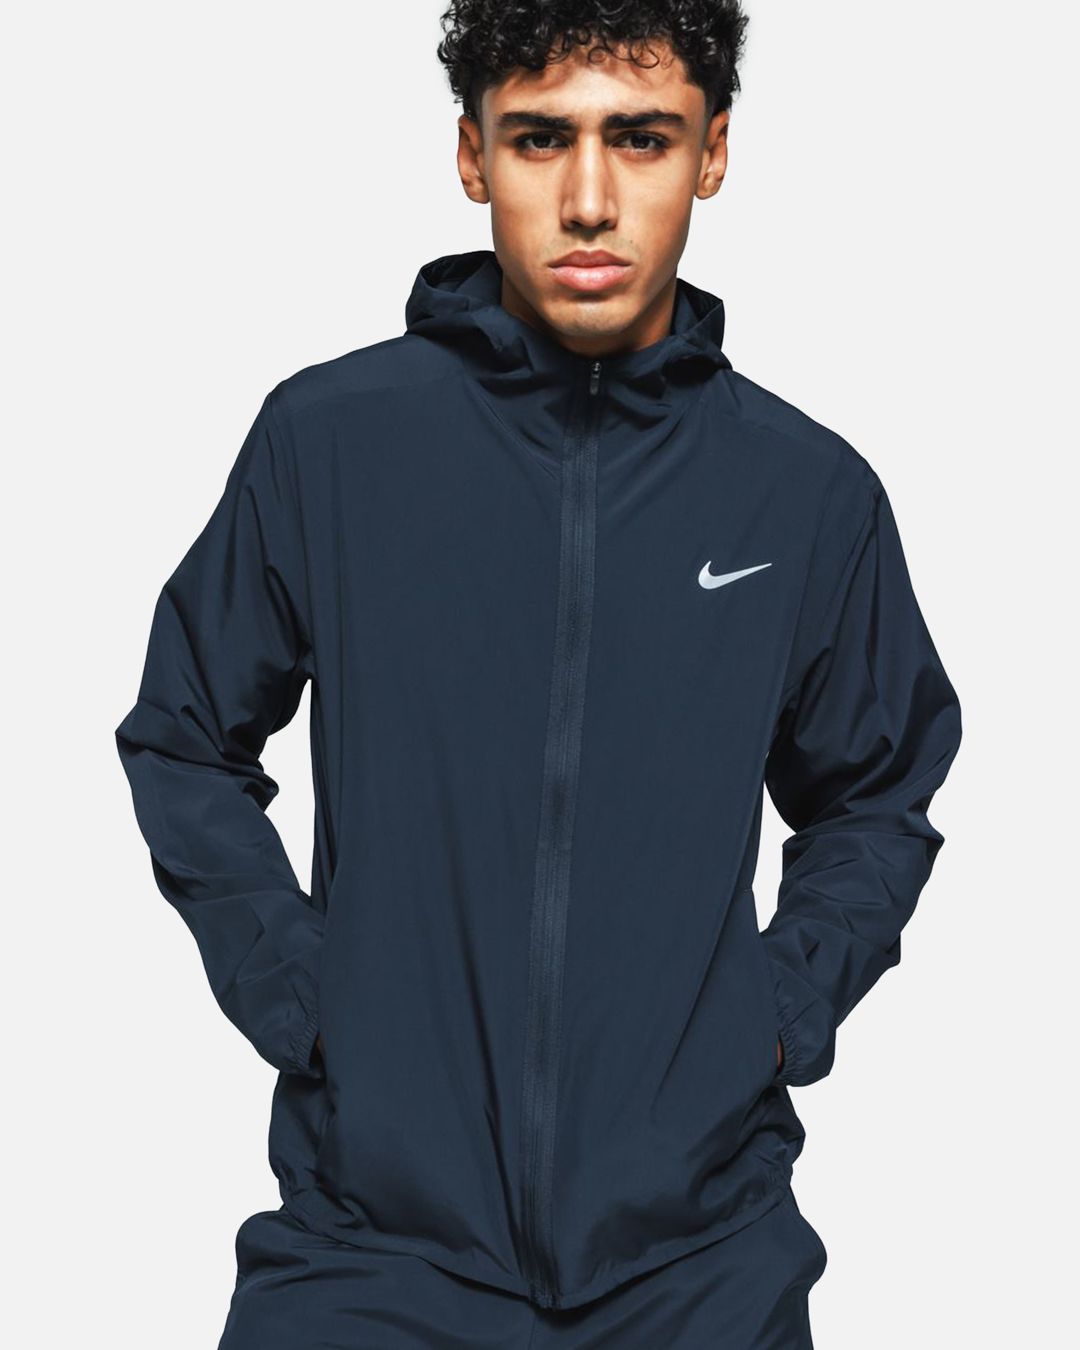 Nike Form Jacket - Navy